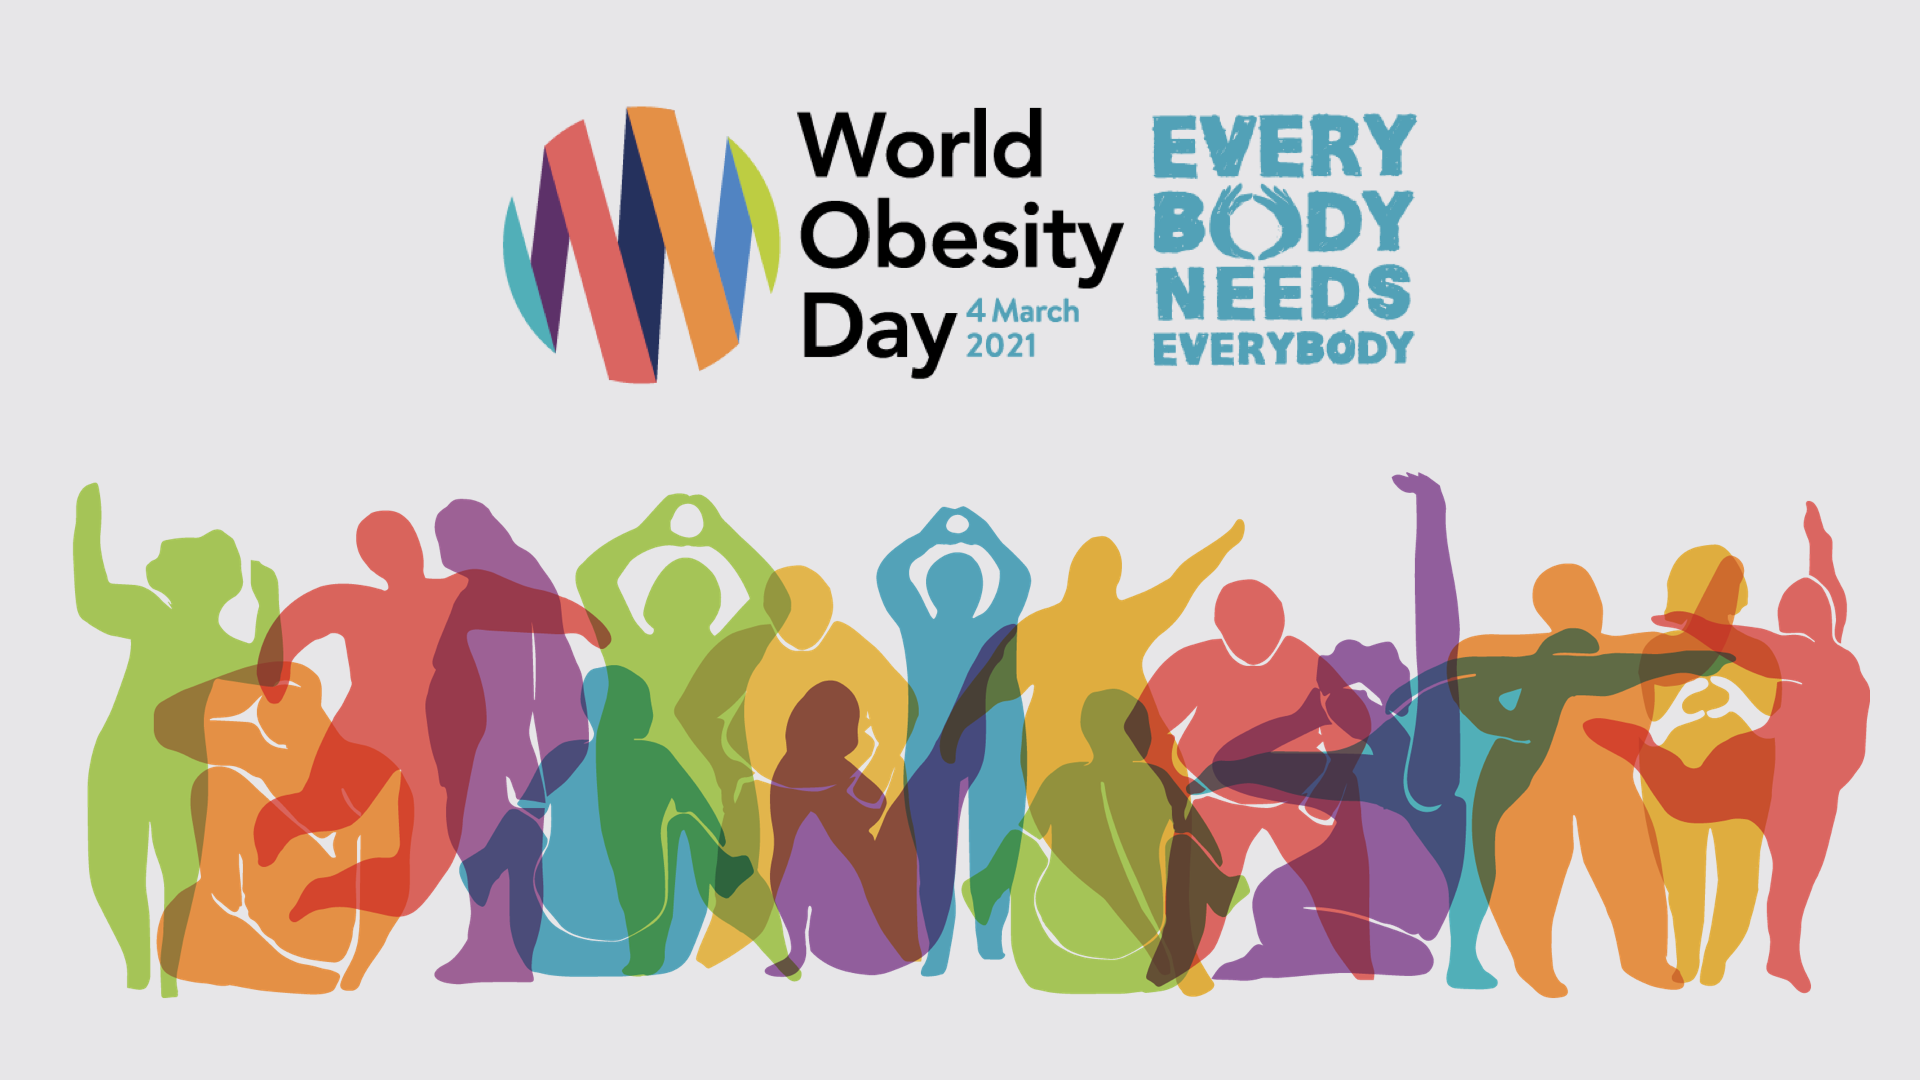 Día mundial de la obesidad: Every Body needs Everybody